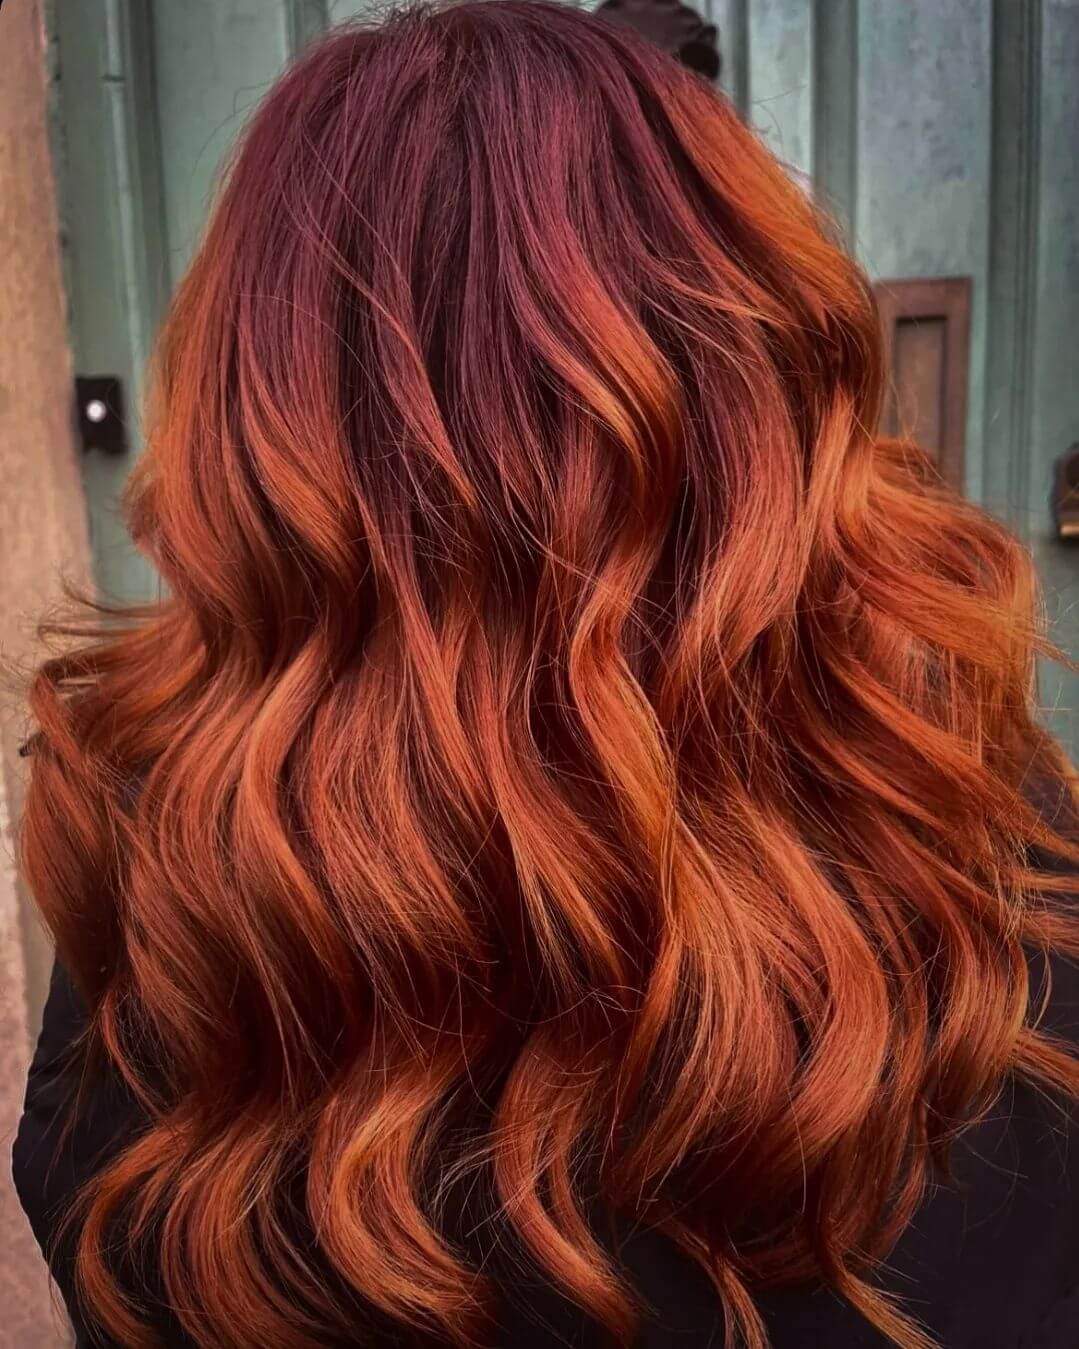 Red to Orange hair